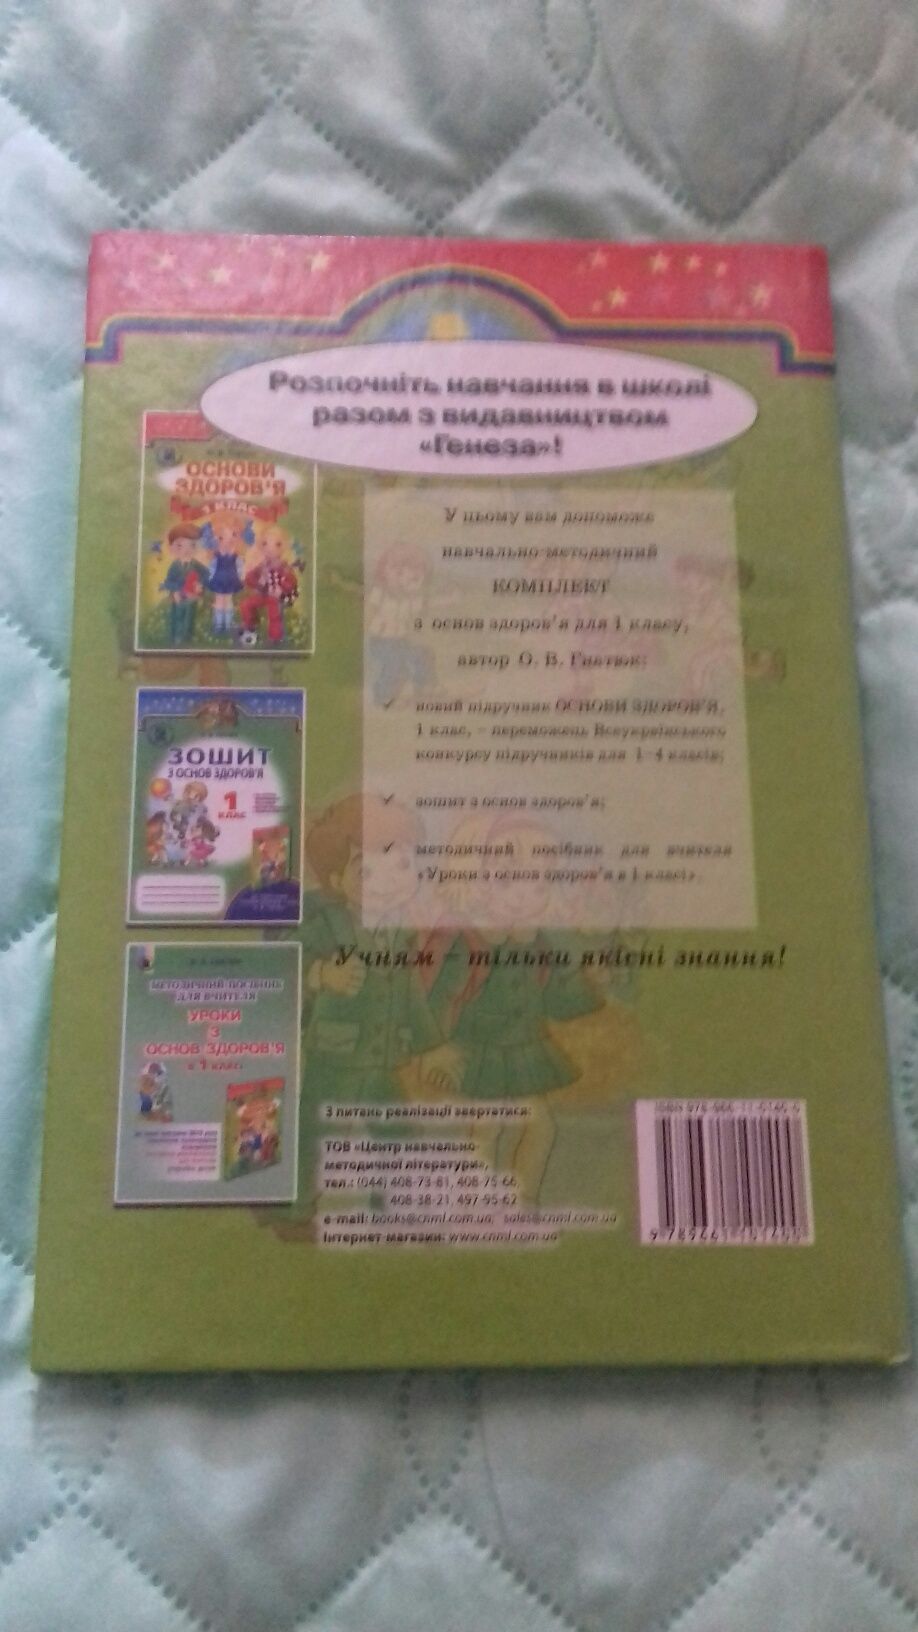 Нова книга "Основи здоров'я 1 клас"2012 р.